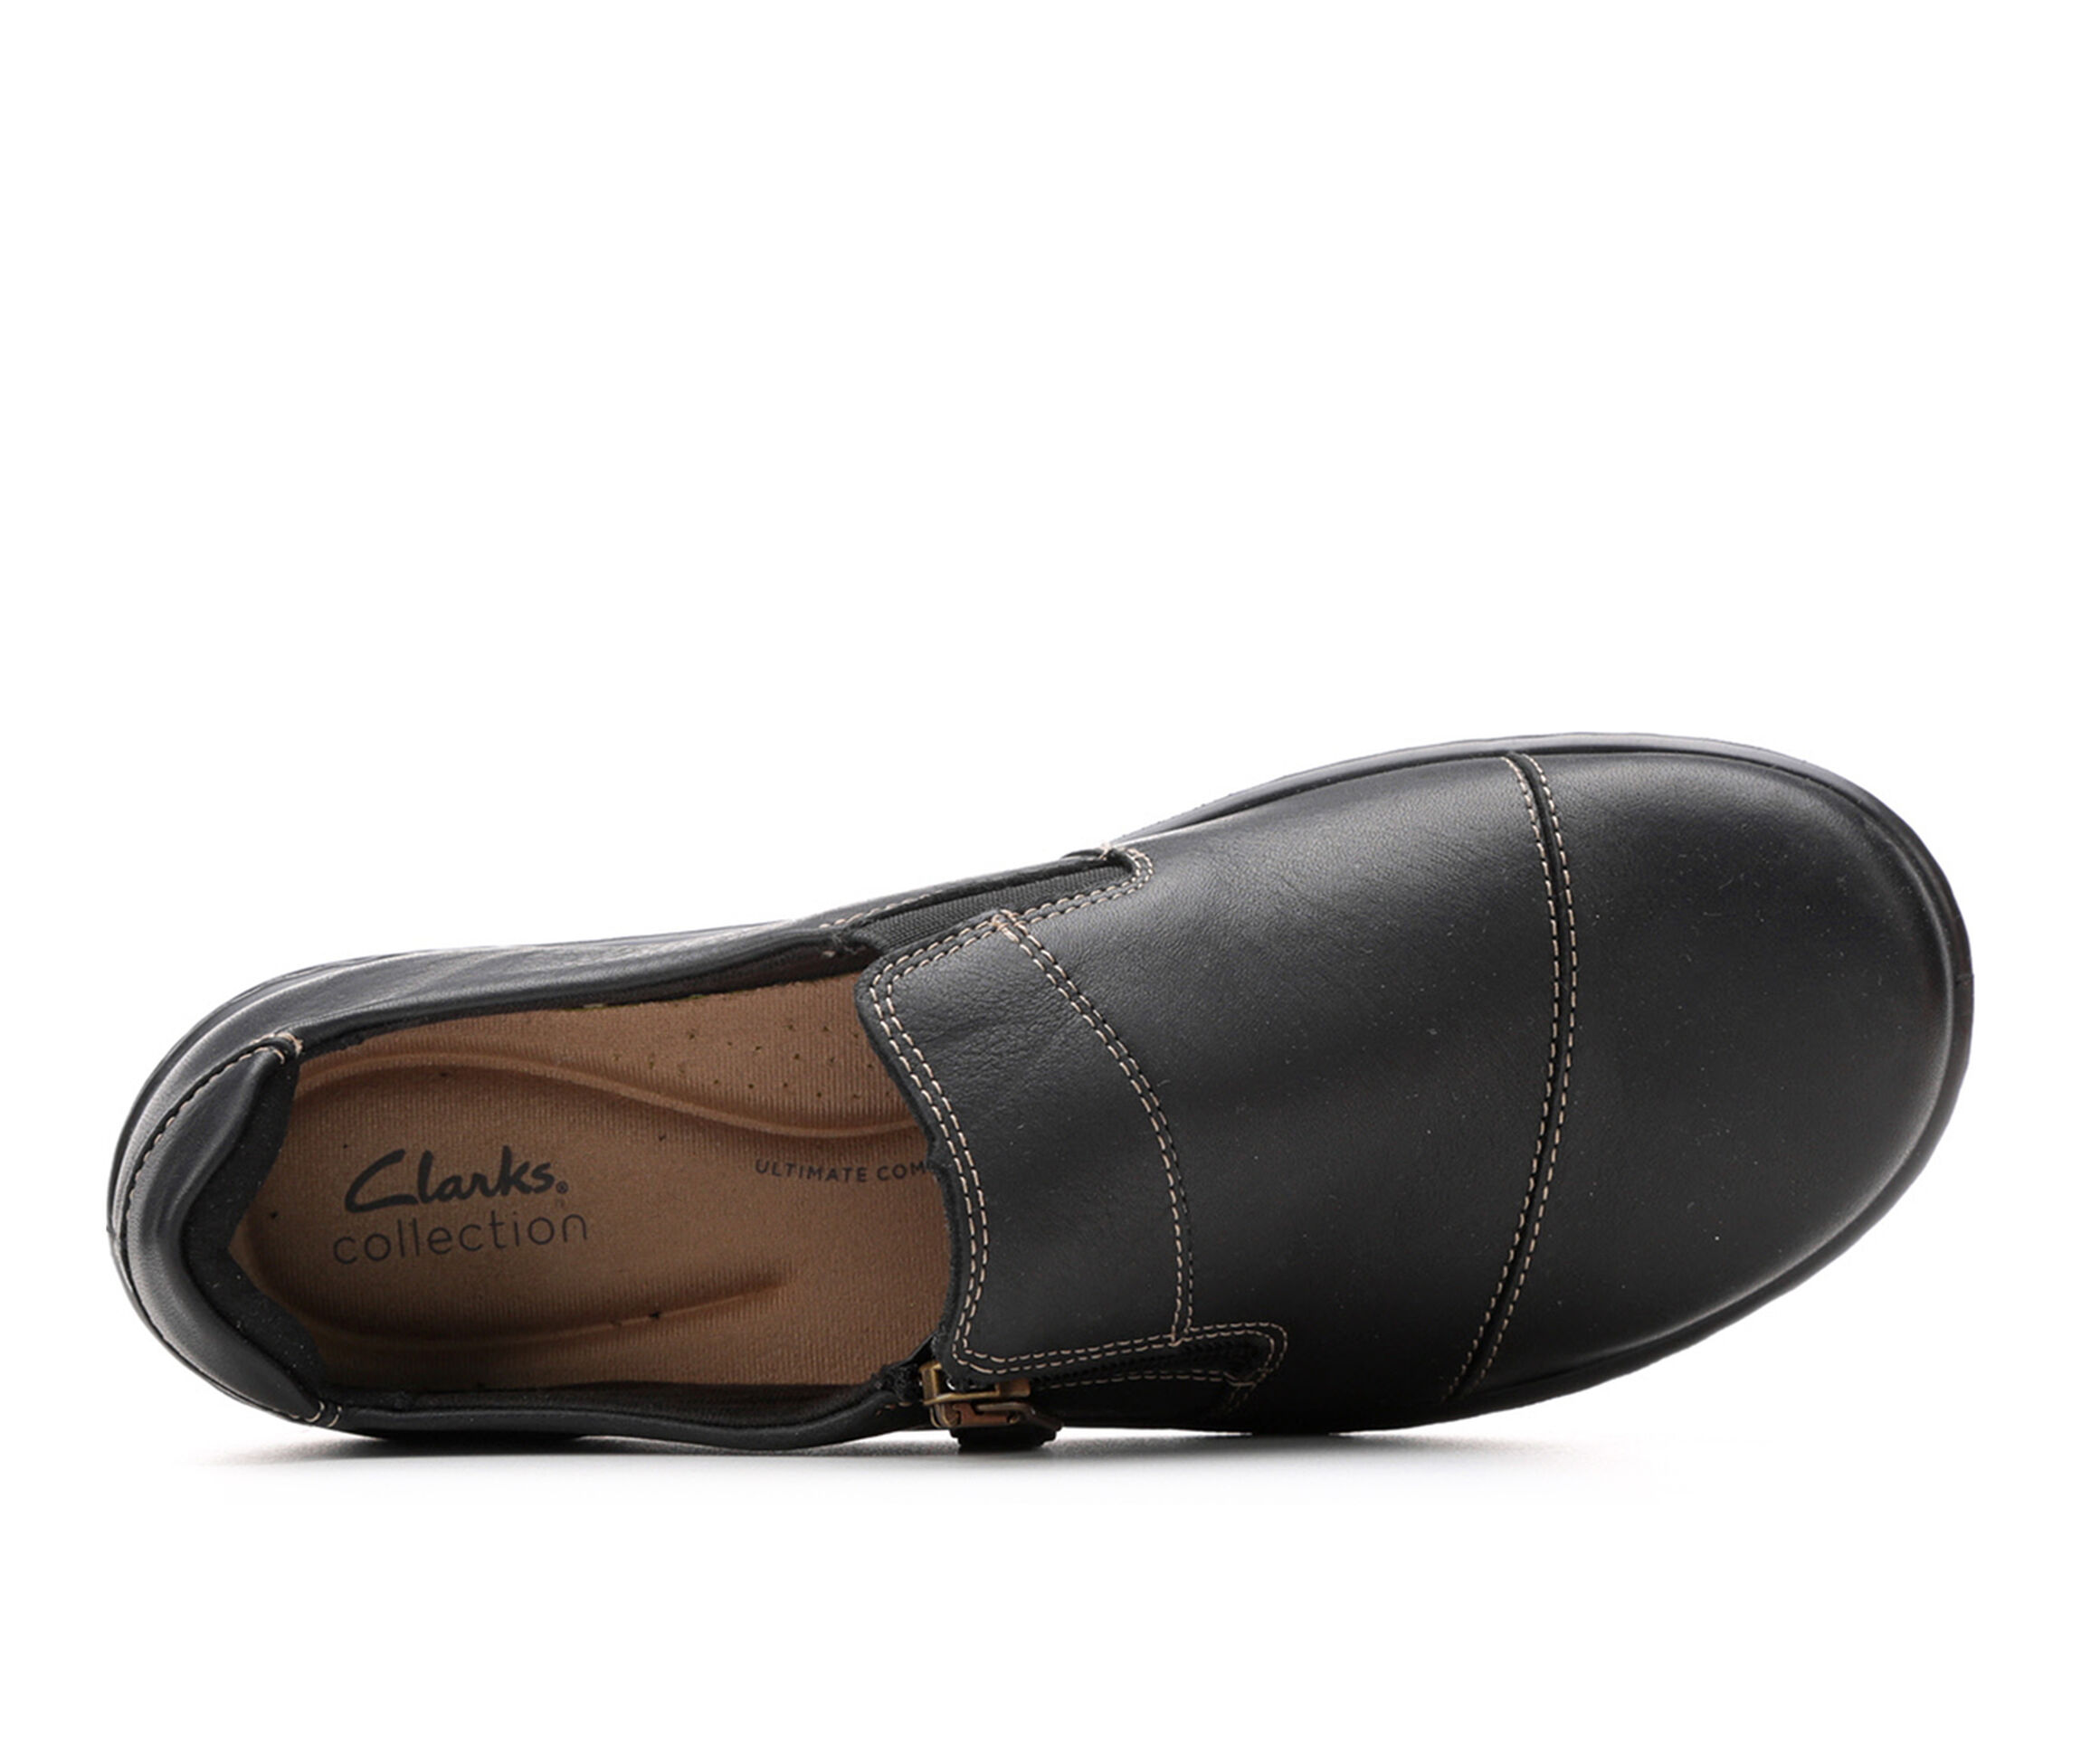 Duplikere Grænseværdi samarbejde Shop Clarks Shoes, Sandals & Boots | Shoe Carnival